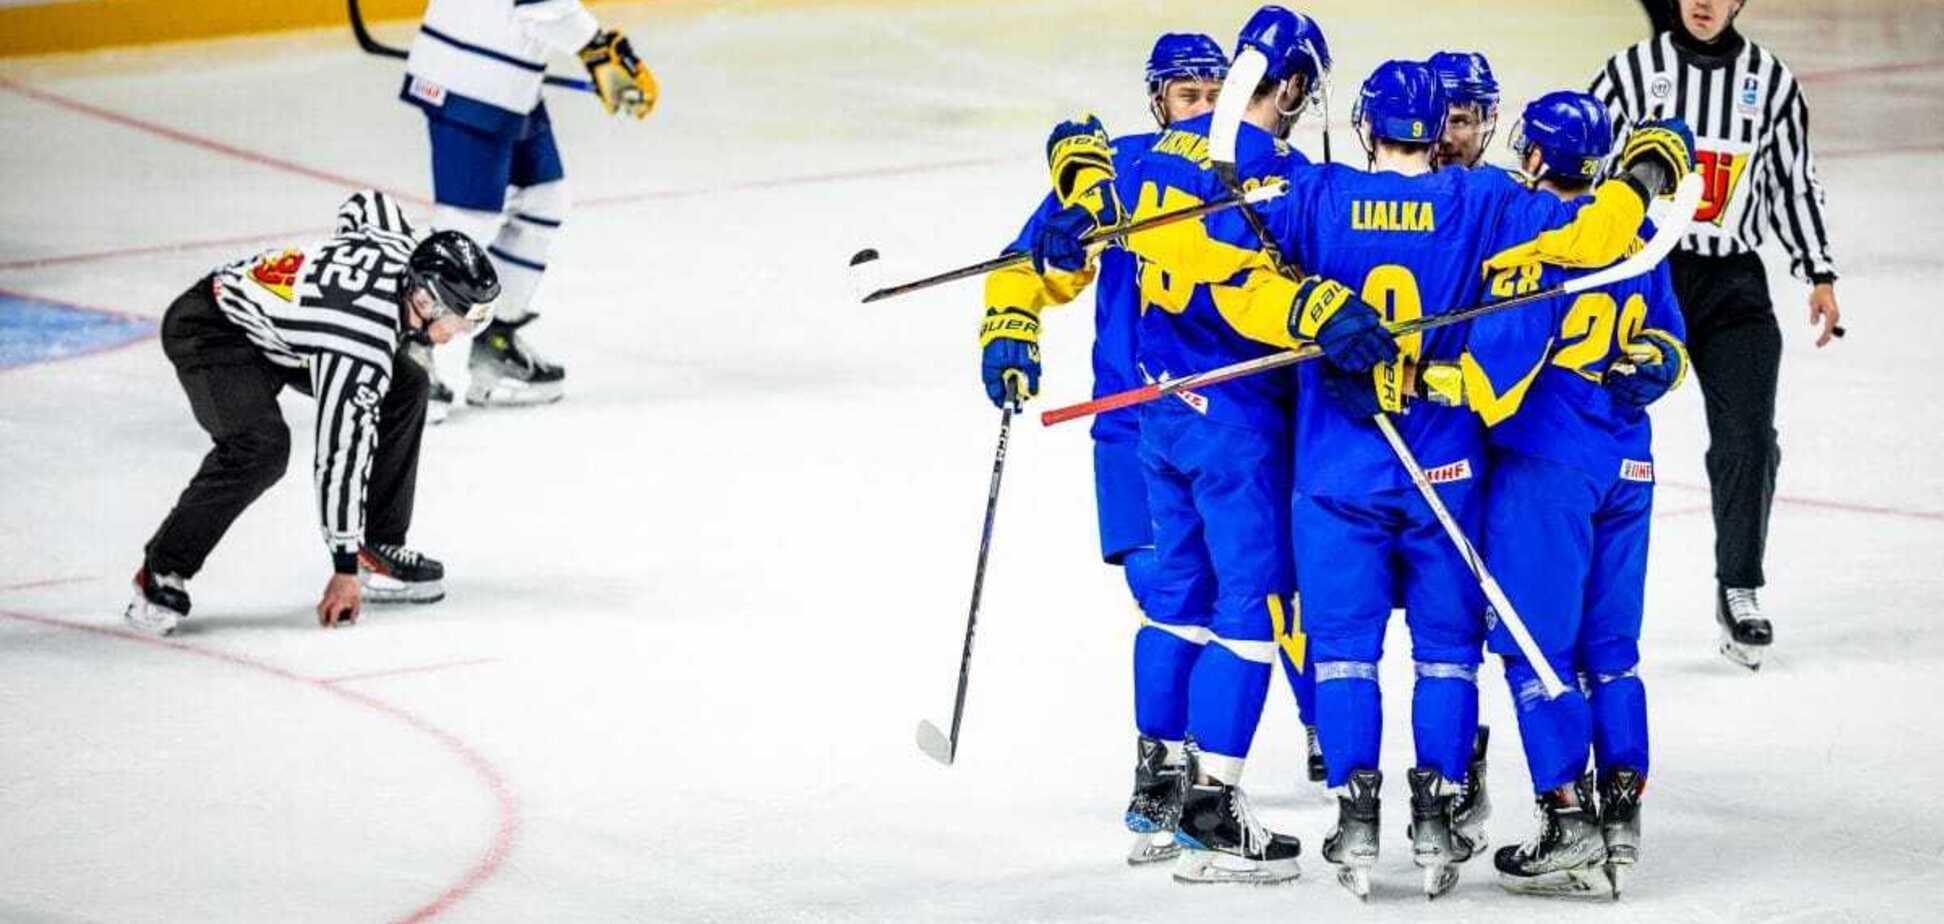 Загальний рахунок 27-1: Україна виграла четвертий матч поспіль на ЧС з хокею